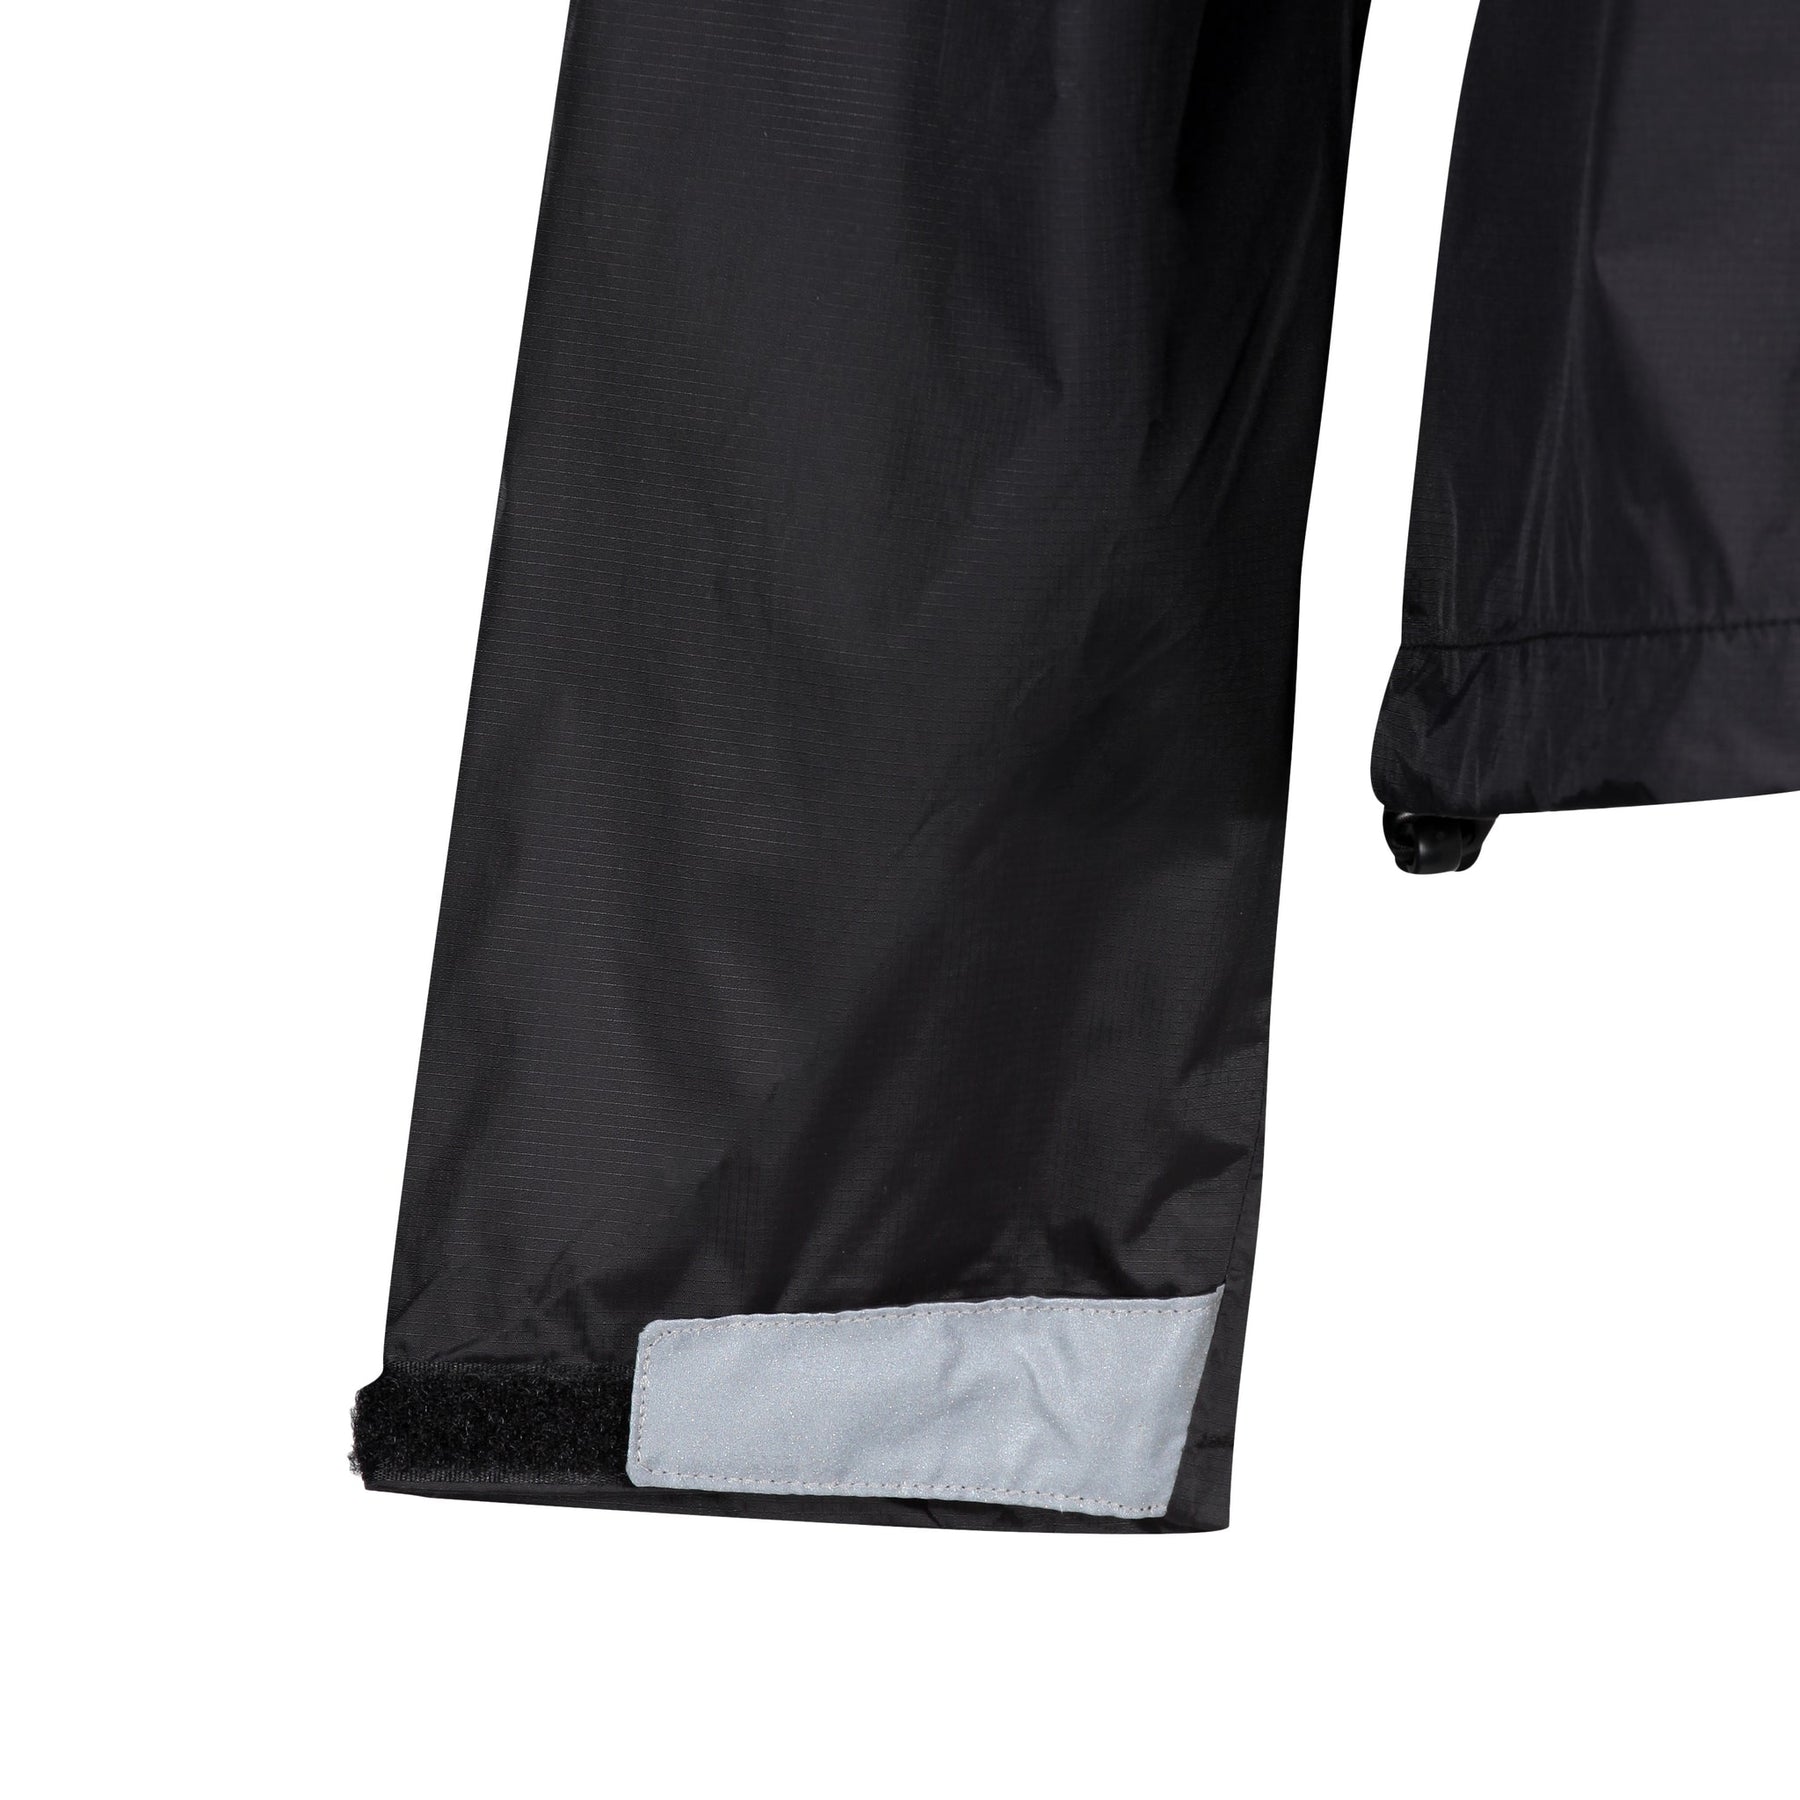 MotoGirl Waterproof Over Jacket Black